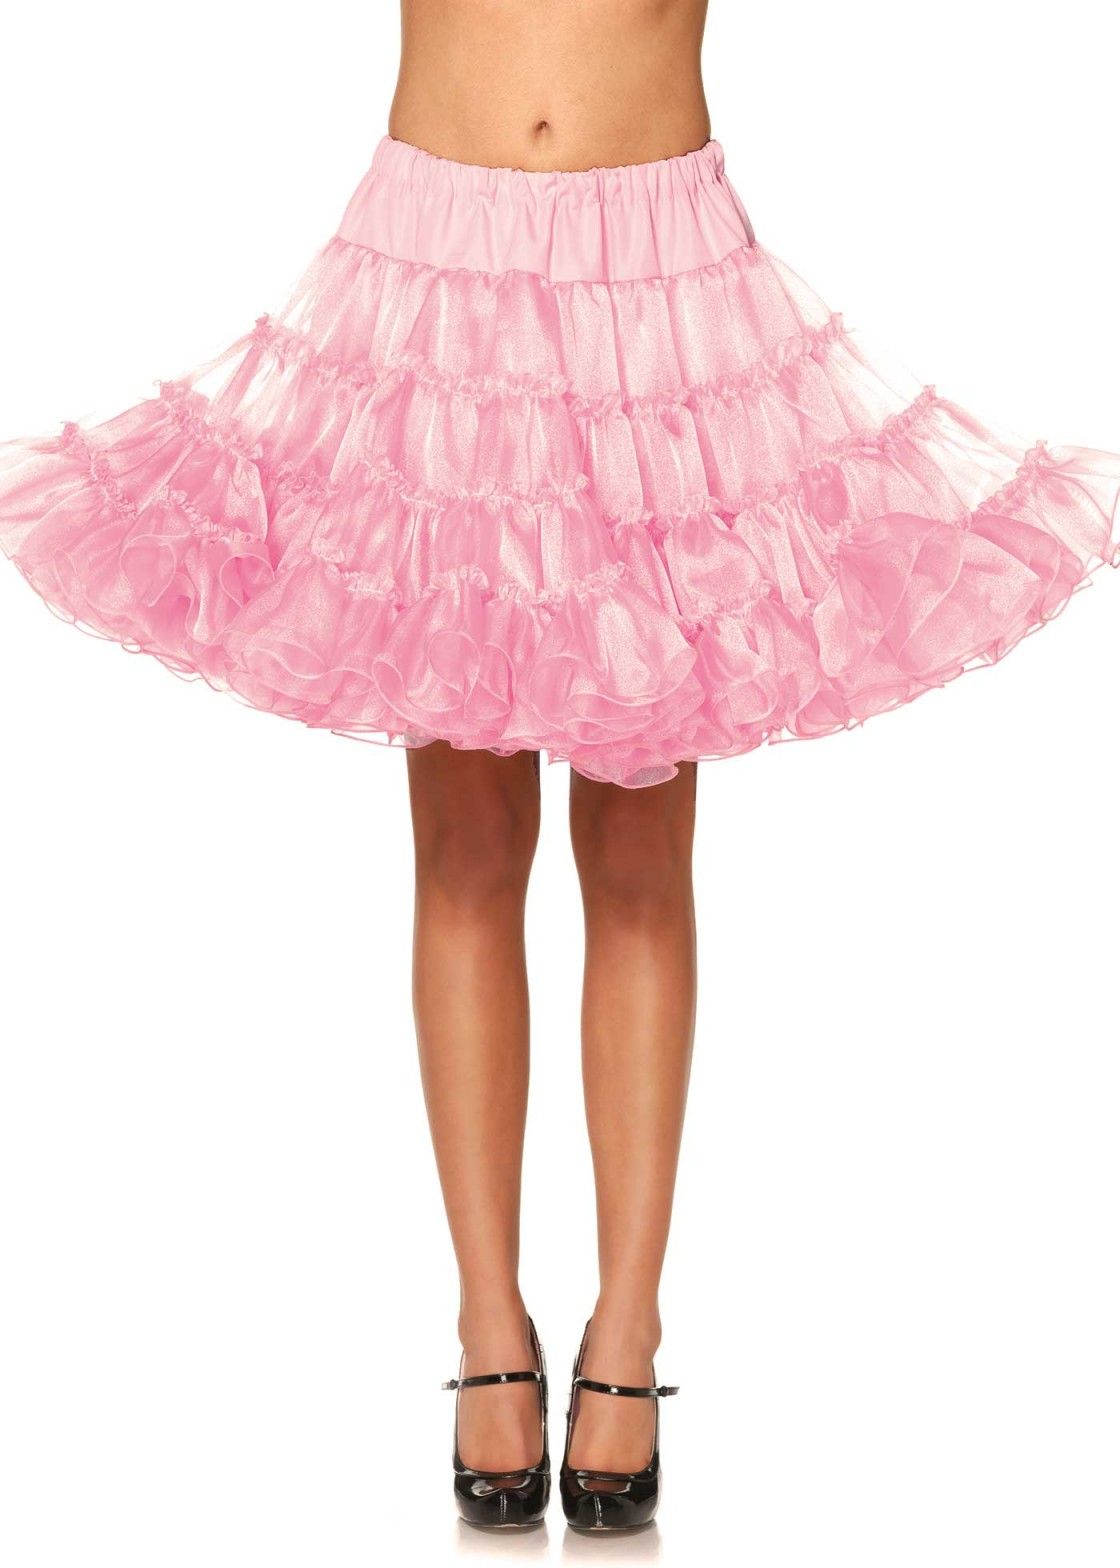 Luxe roze hoepelrok petticoat